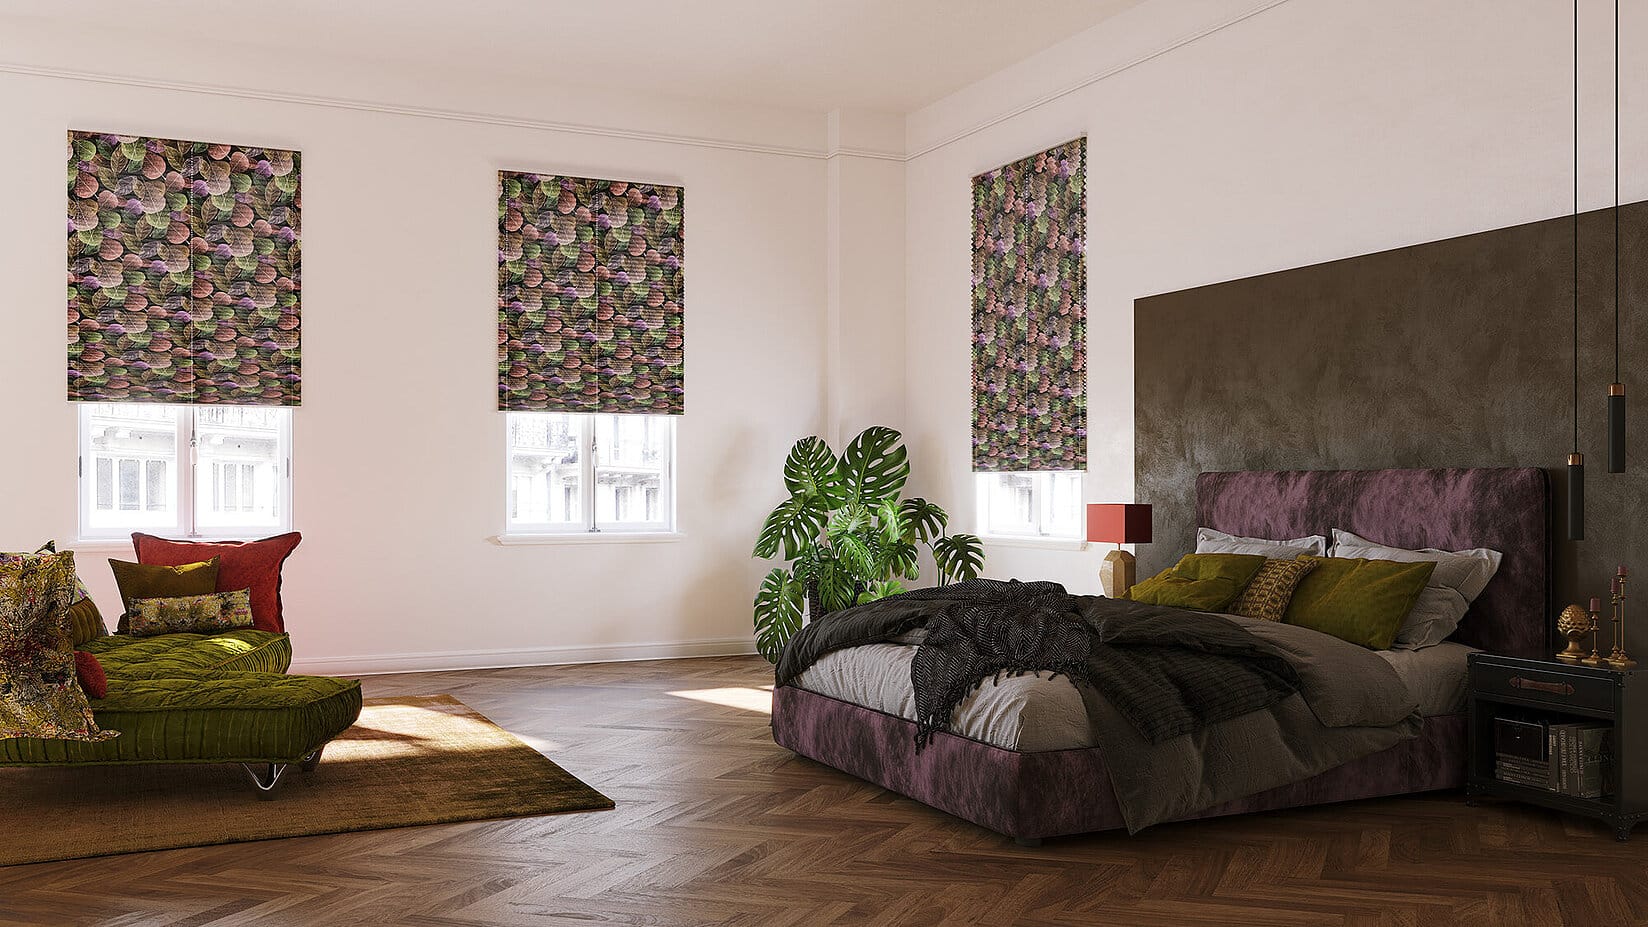 Schlafzimmer mit dunklen Plissees und buntem Blättermotiv die den Raum abdunkeln können.